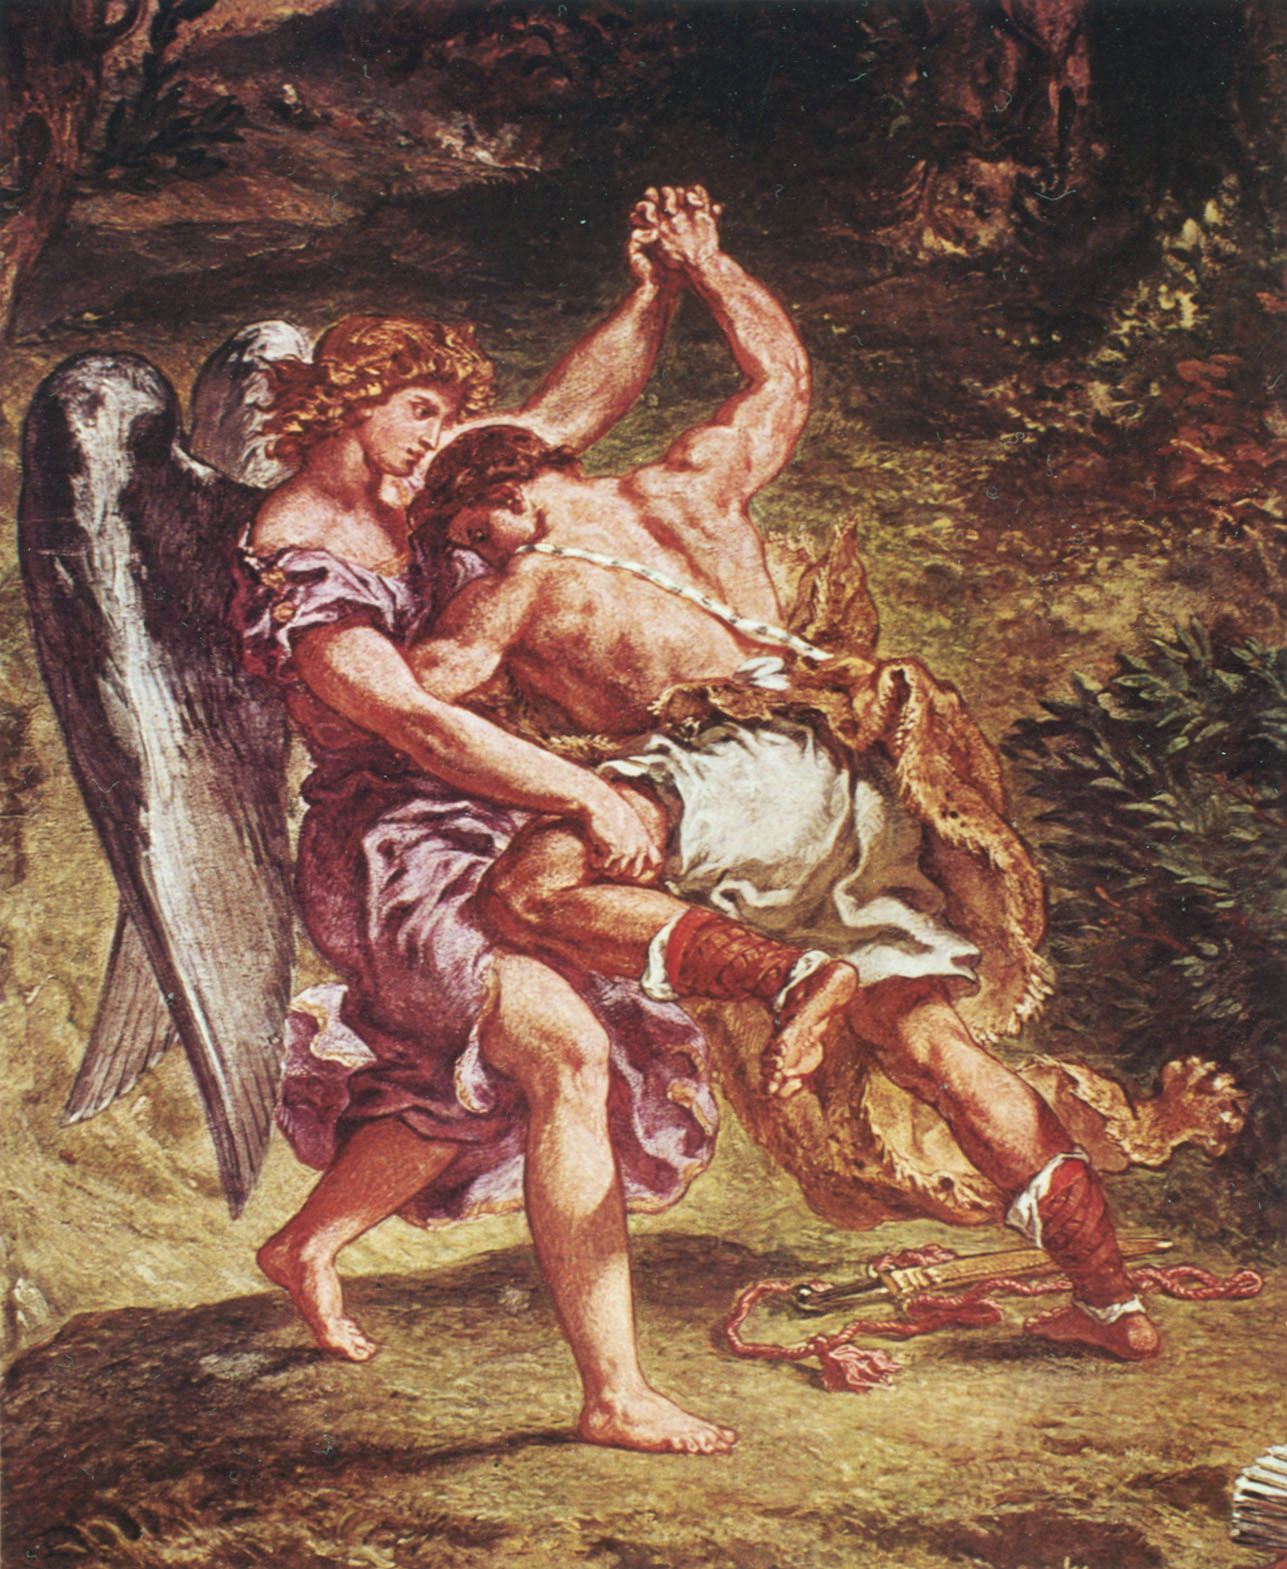 3. Giacobbe e langelo di Delacroix